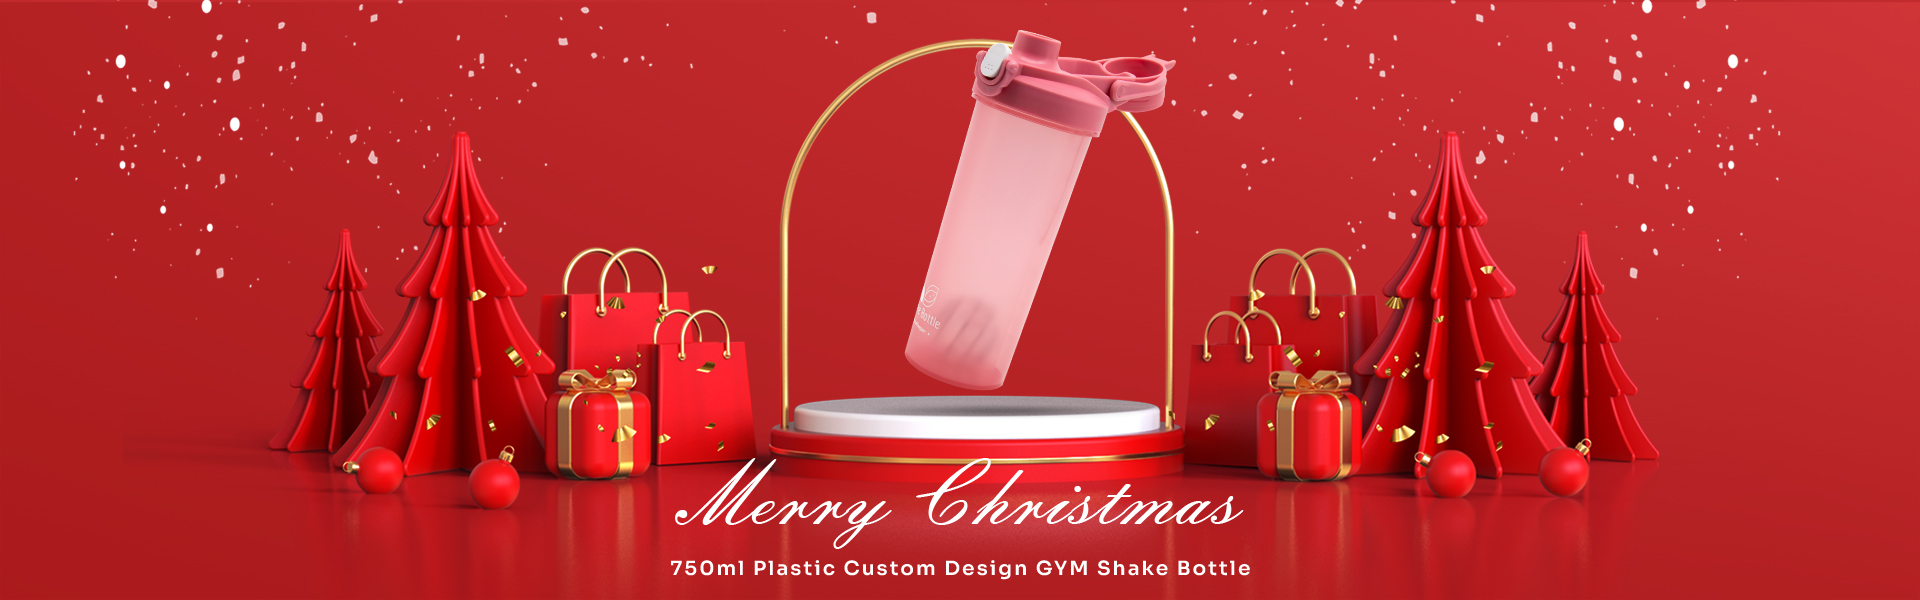 750ml Plastic Custom Design GYM Shake Bottle